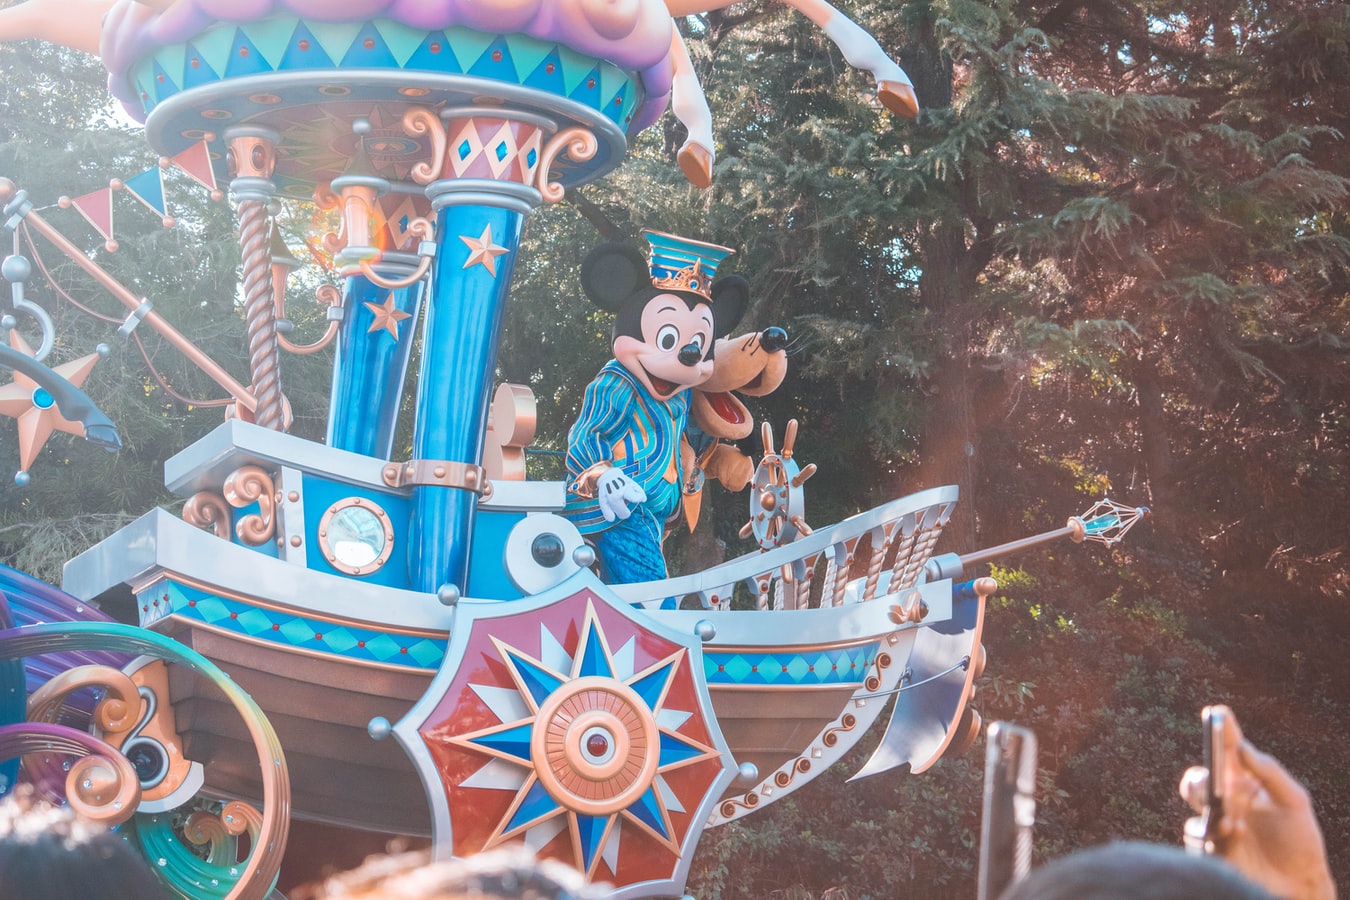 Des milliers de visiteurs ont pu pénétrer lundi dans le Disneyland de Shanghai, le premier des six parcs de loisirs de Walt Disney à travers le monde à rouvrir après trois mois d'arrêt à cause de la pandémie du coronavirus.